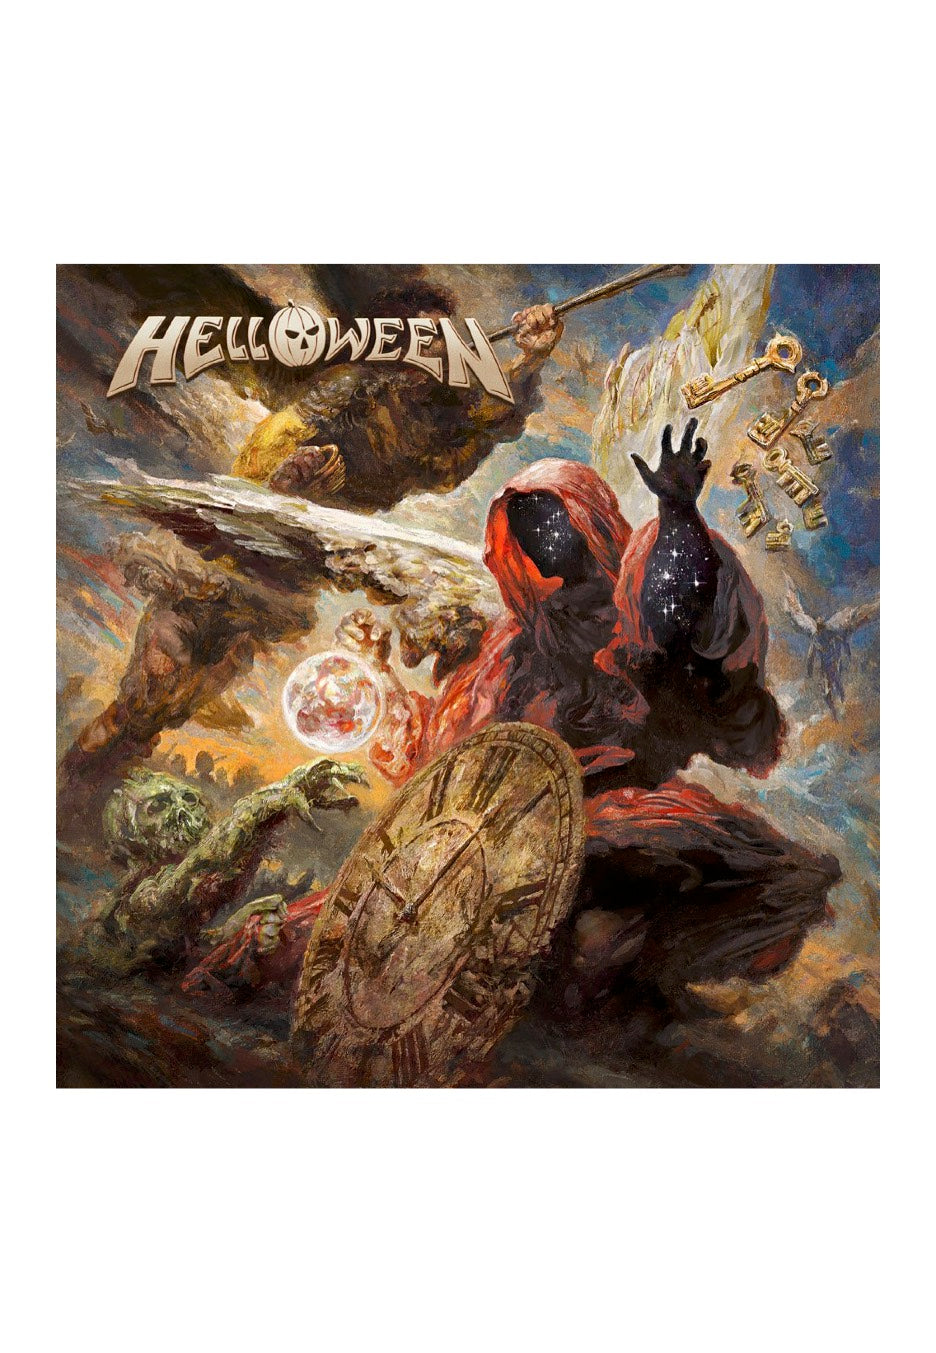 Helloween - Helloween - Digipak 2 CD